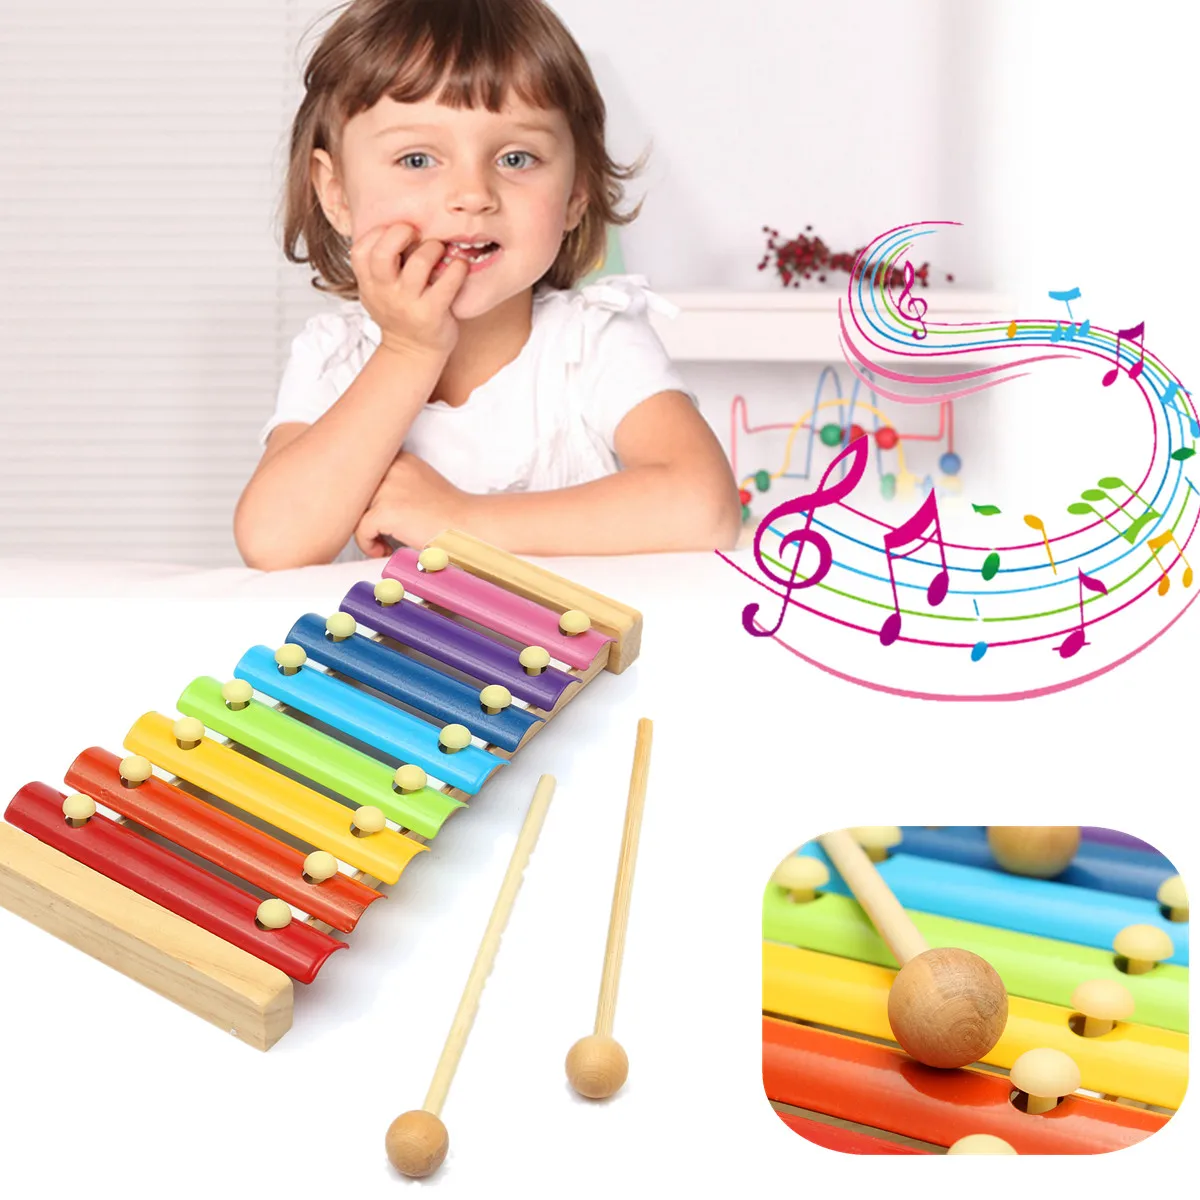 Игры играть музыкальный инструмент. Музыкальные игрушки для детей. Музыкальные игрушки для дошкольников. Игрушечные музыкальные инструменты. Музыкальная игрушка для малышей.